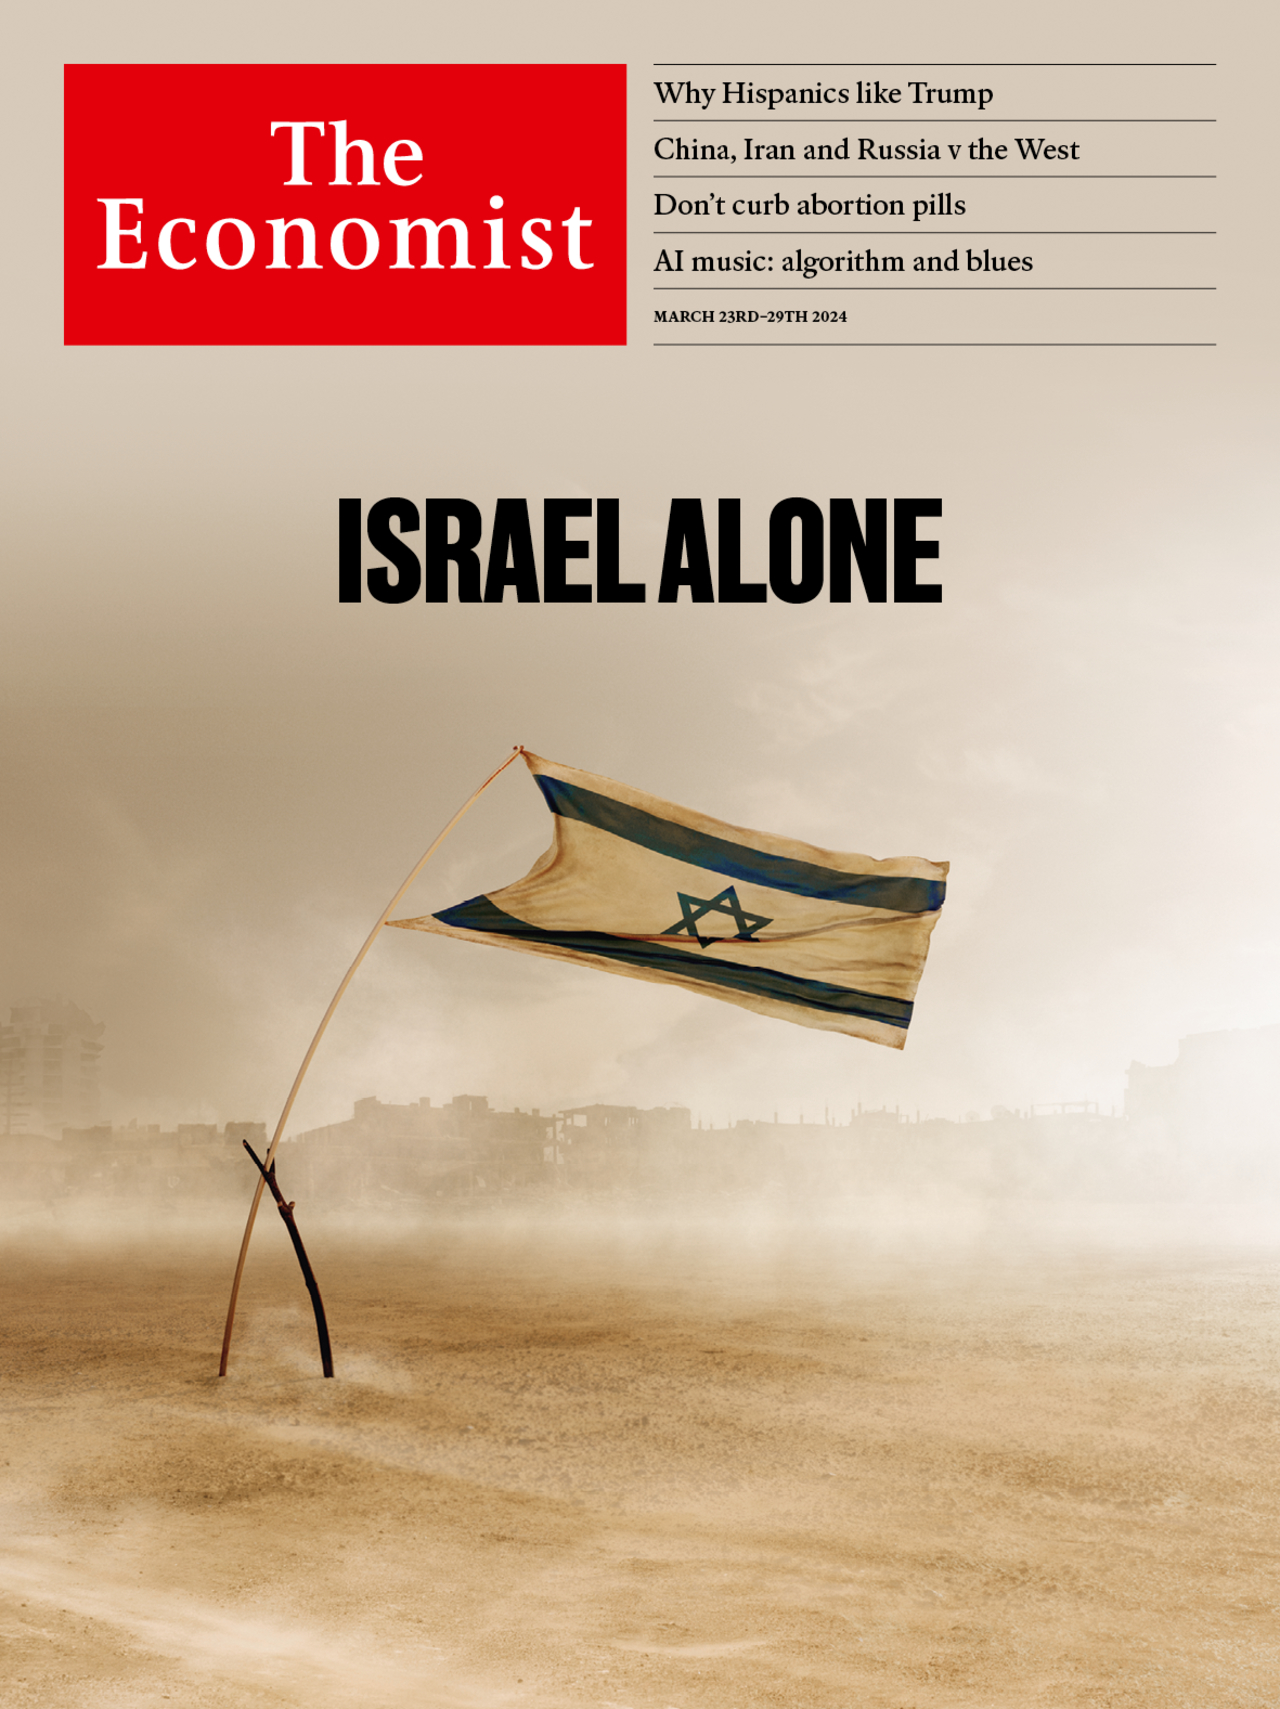  Sionist mediamagnatlar taʼsirida ekani taxmin qilinuvchi The Economist haftalik nashrining 2024 yil 23 mart soni muqovasi. Suratga “Isroil yolgʻiz” deb izoh yozilgan.